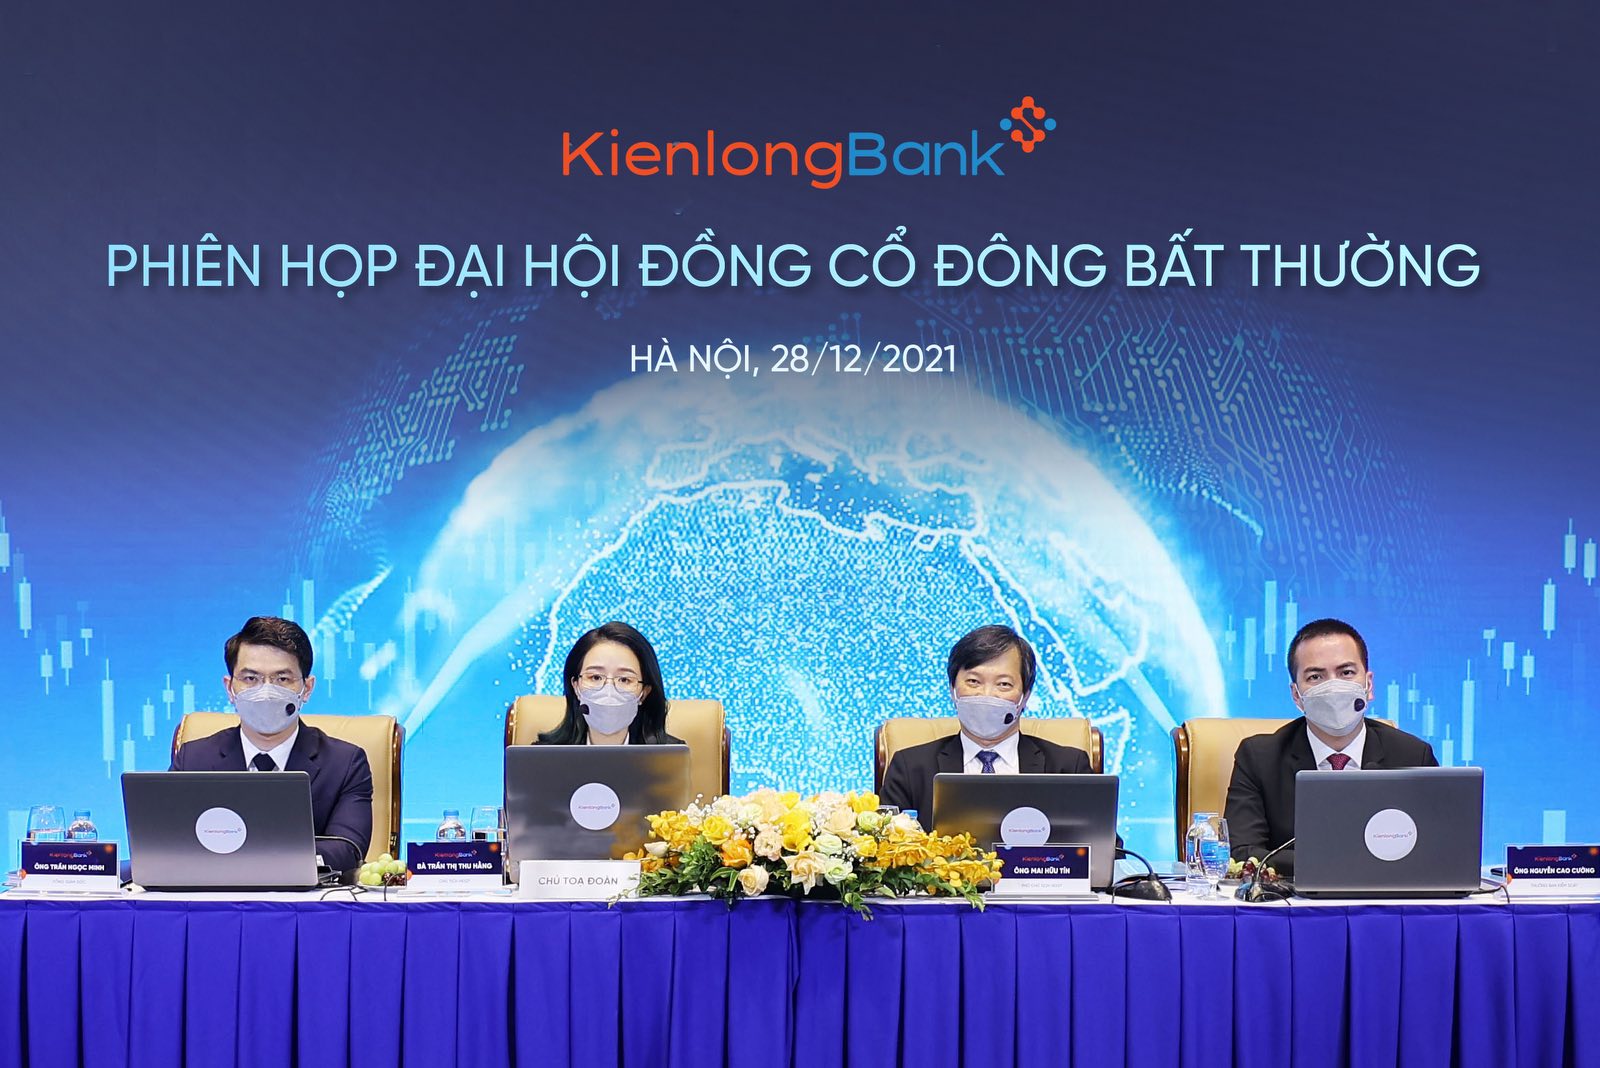 KienlongBank tổ chức ĐHĐCĐ bất thường, chuẩn bị niêm yết cổ phiếu lên sàn chứng khoán - Ảnh 1.